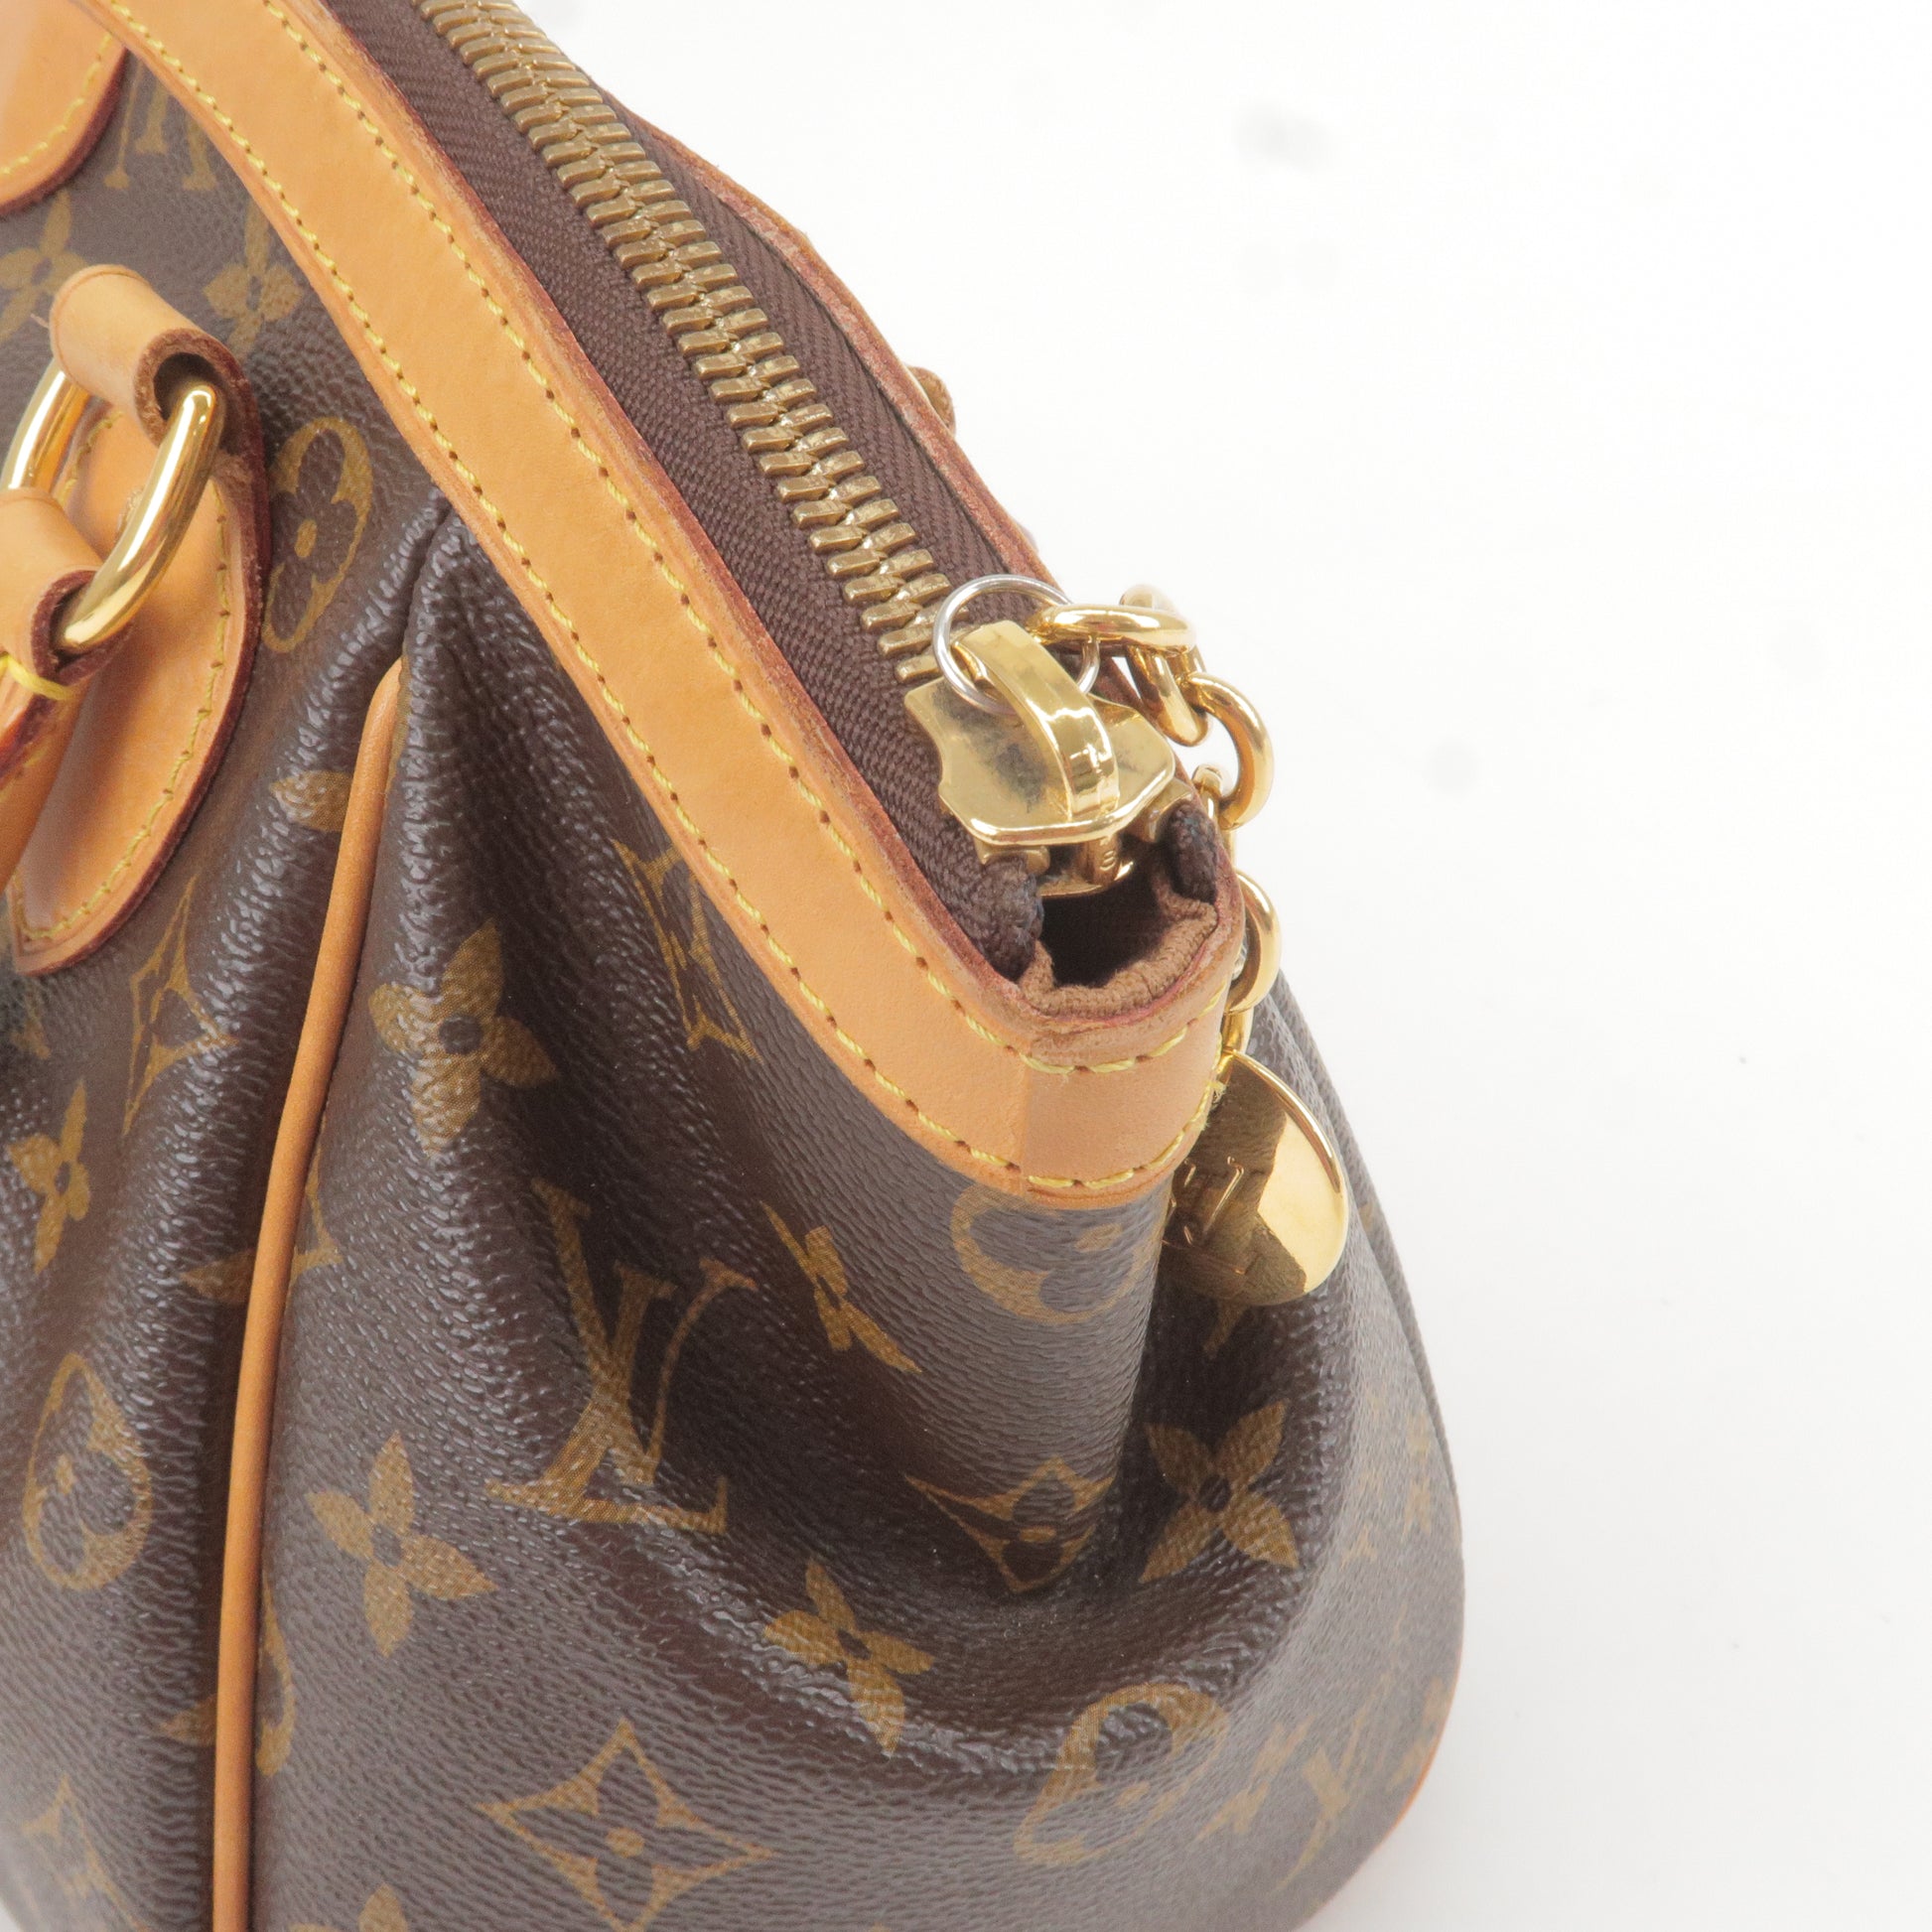 Louis-Vuitton-Monogram-Tivoli-PM-Hand-Bag-M40143 – dct-ep_vintage